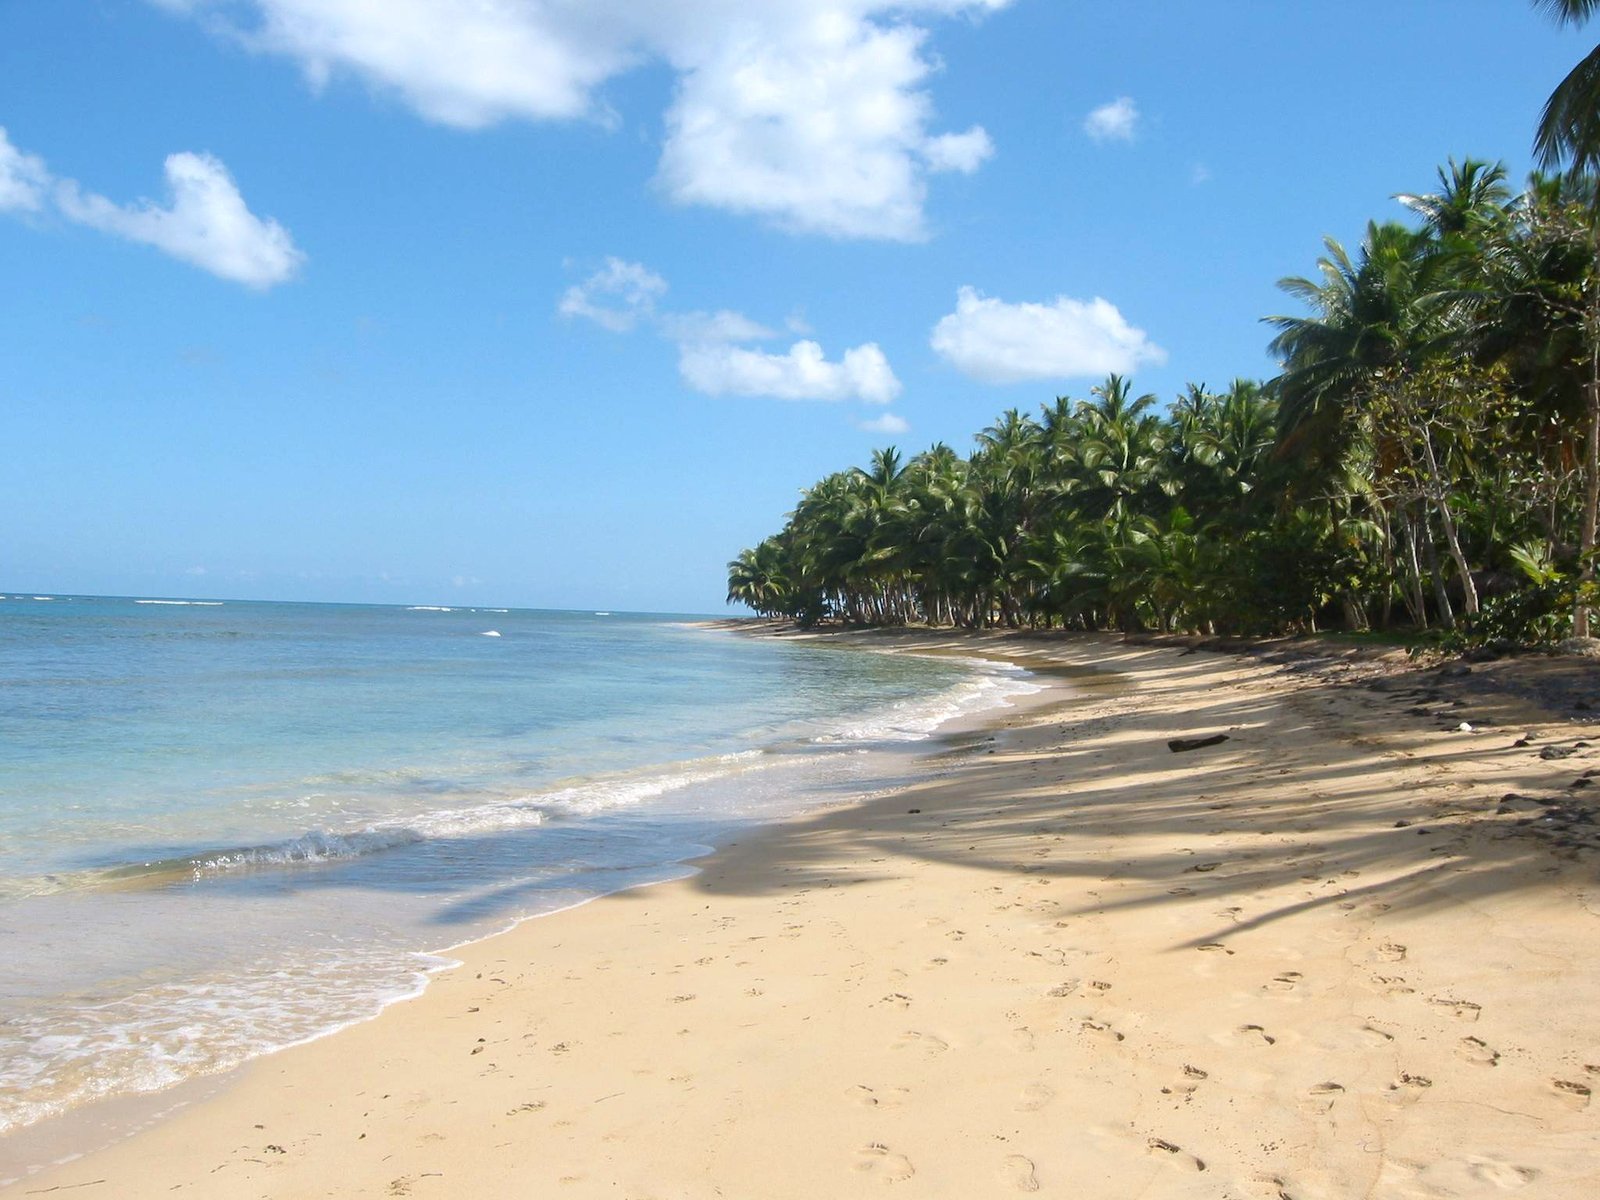 tropical beach on an island near the ocean